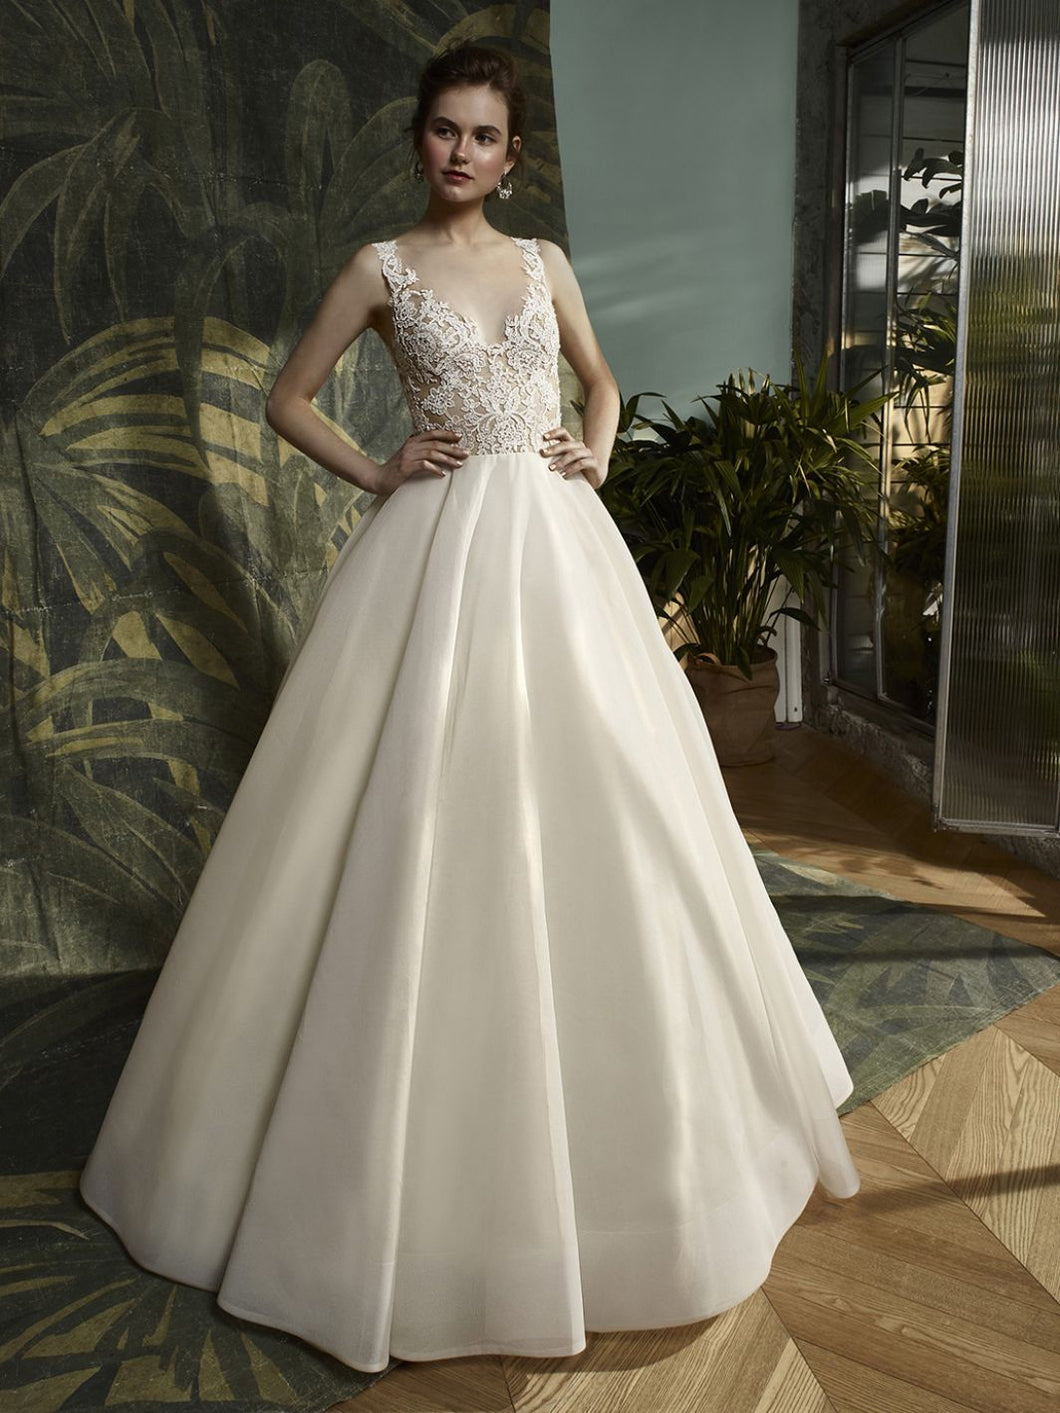 Enzoani 'Krystal' size 6 new wedding dress front view on model